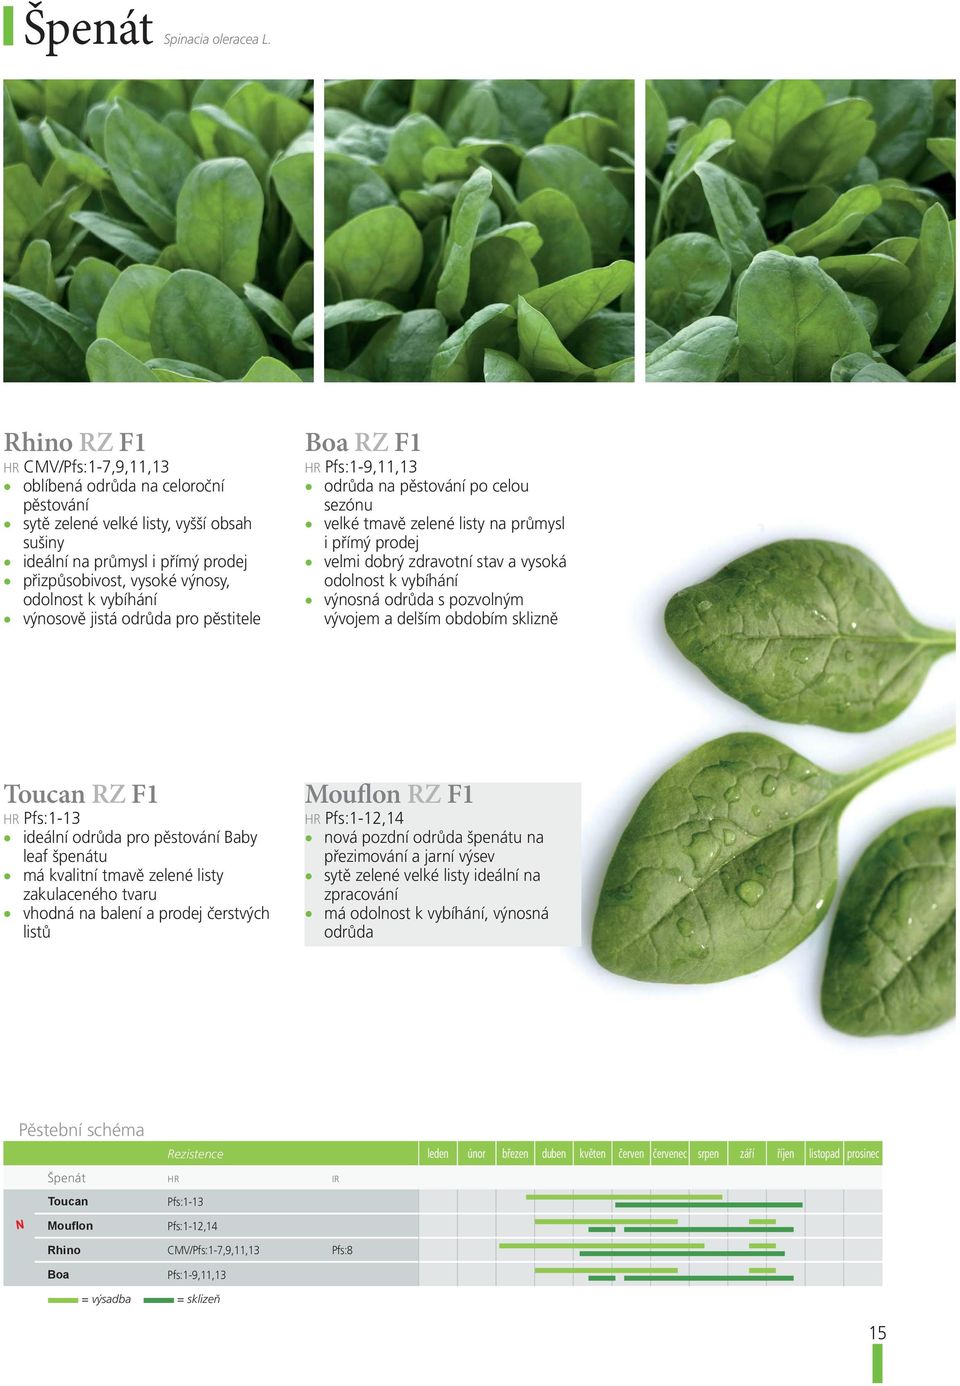 vybíhání výnosově jistá odrůda pro pěstitele Boa RZ F1 HR Pfs:1-9,11,13 odrůda na pěstování po celou sezónu velké tmavě zelené listy na průmysl i přímý prodej velmi dobrý zdravotní stav a vysoká